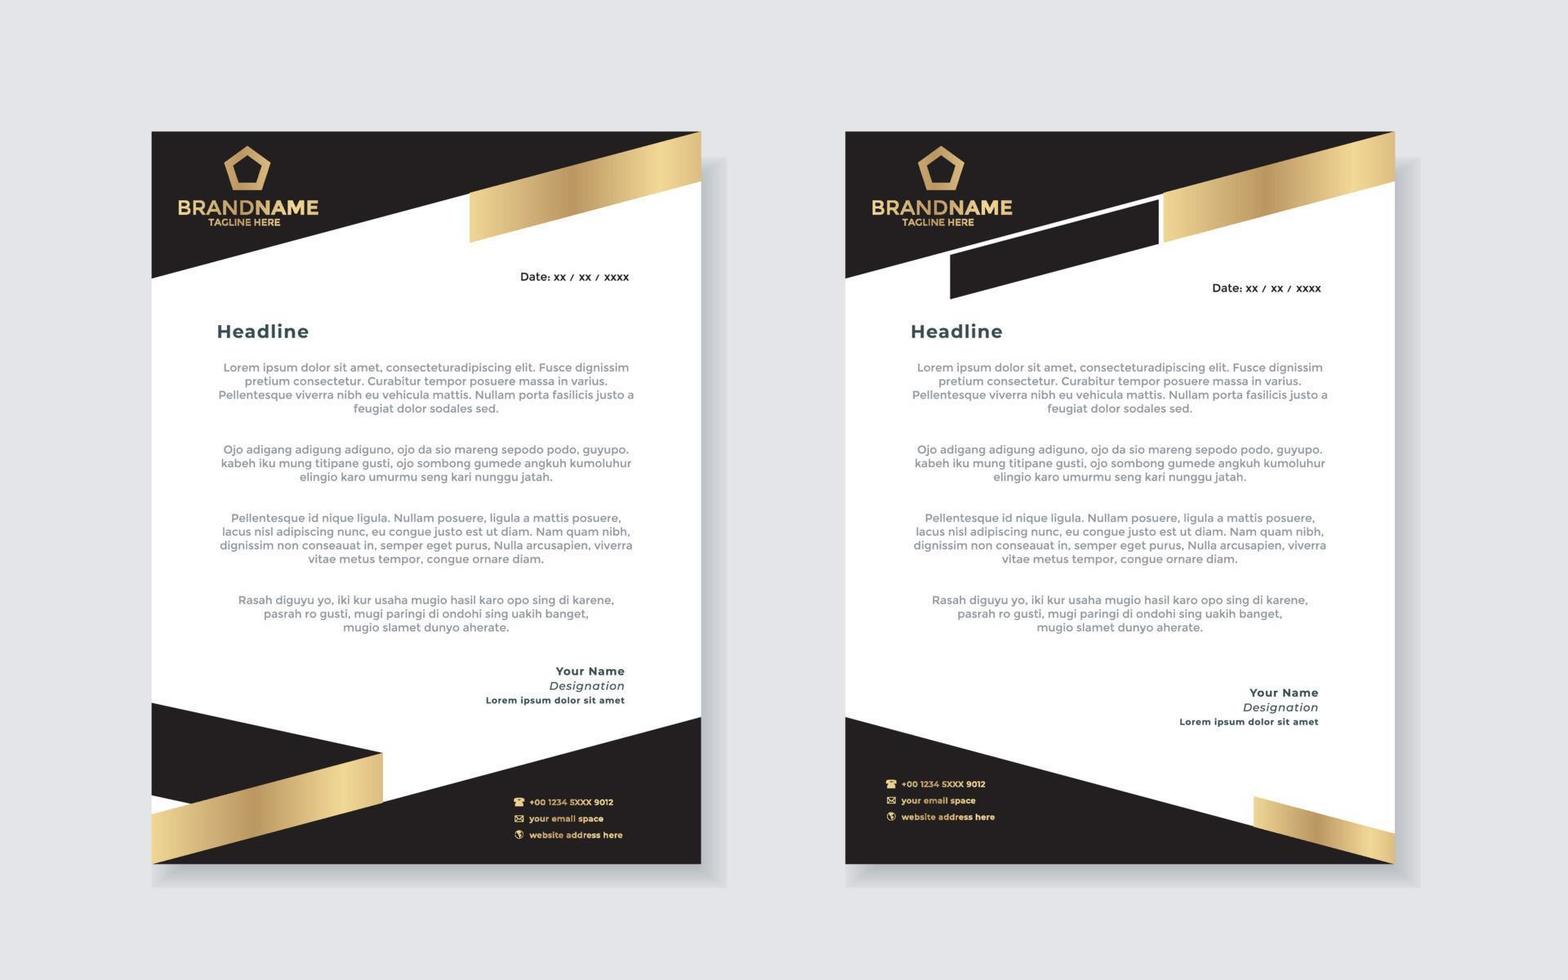 guld lyx brev design mall för företag brevpapper design vektor